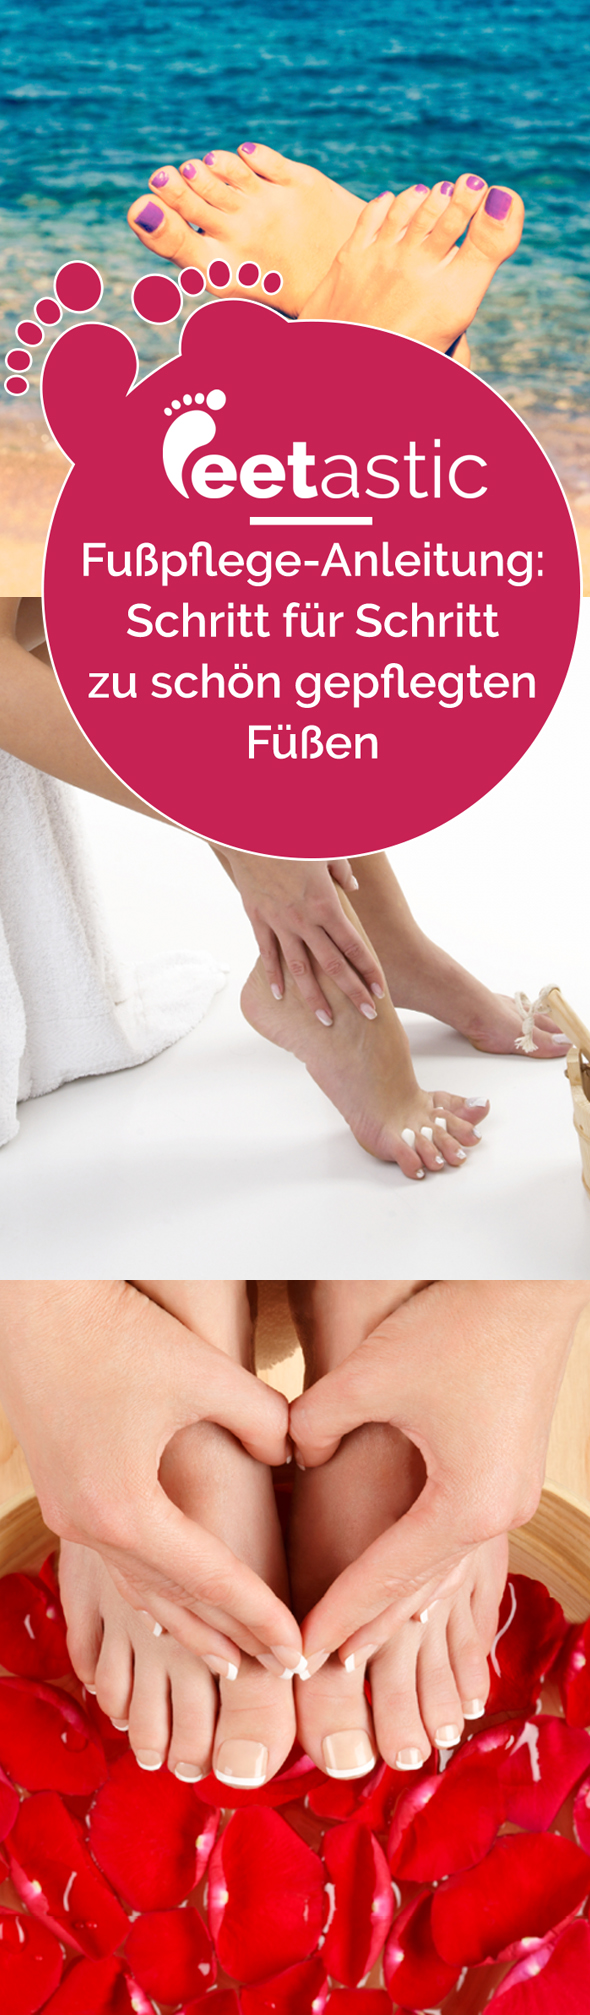 Fußpflege selber machen – wie vom Profi? Mit dieser Fußpflege Anleitung gelingt die Pediküre auch kinderleicht im heimischen Badezimmer. Unsere Fußpflege-Tipps.